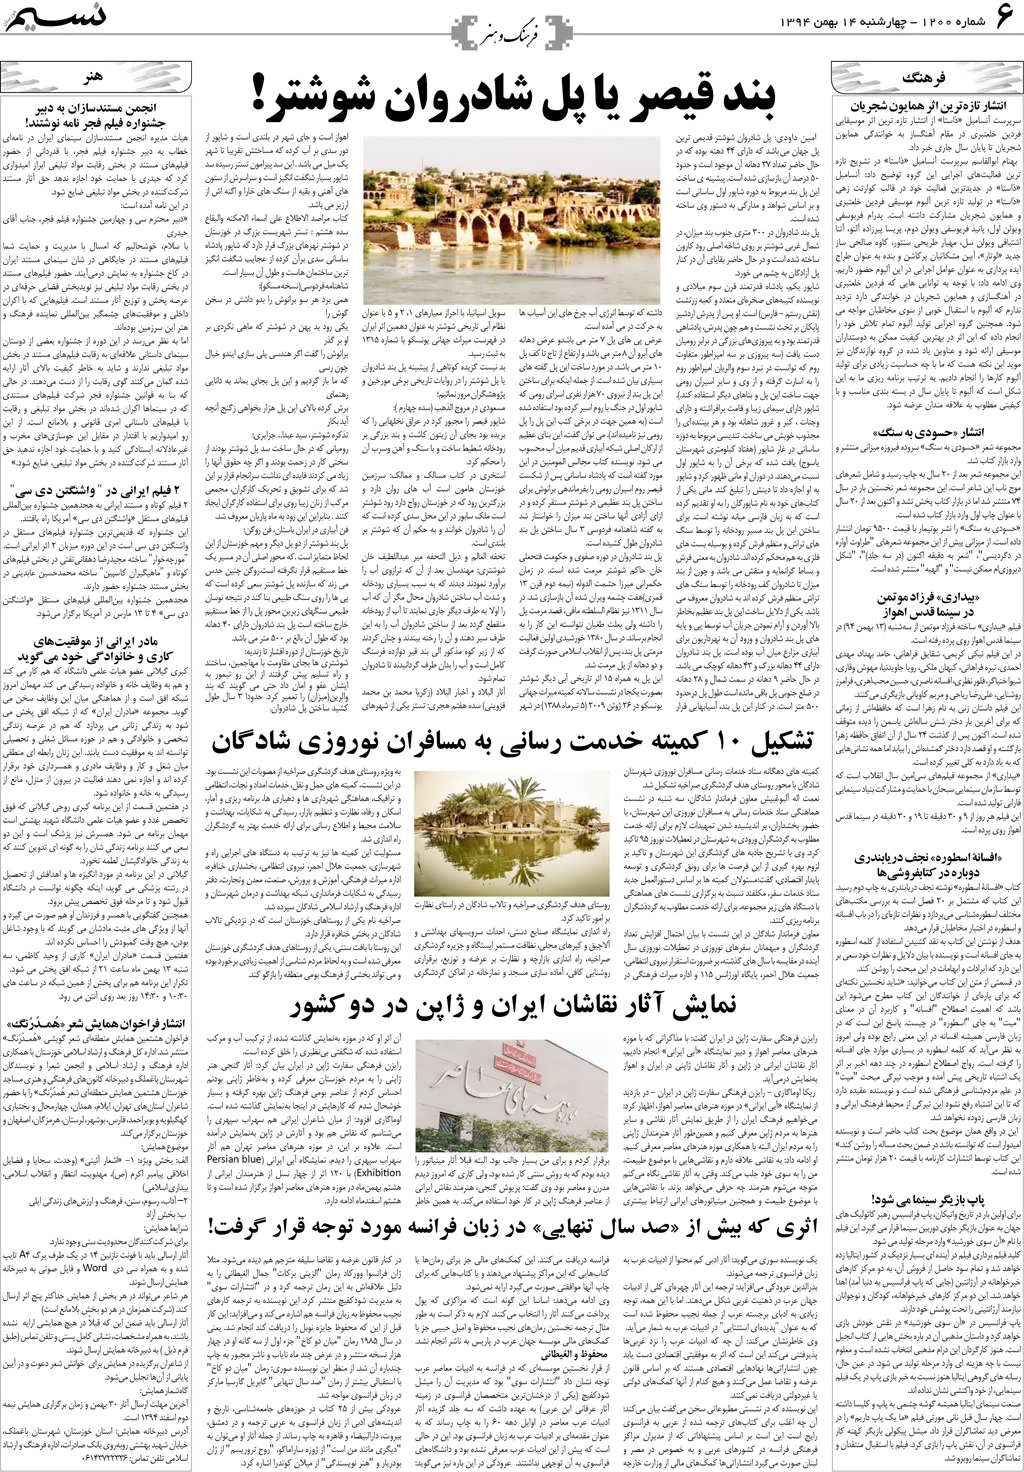 صفحه فرهنگ و هنر روزنامه نسیم شماره 1200